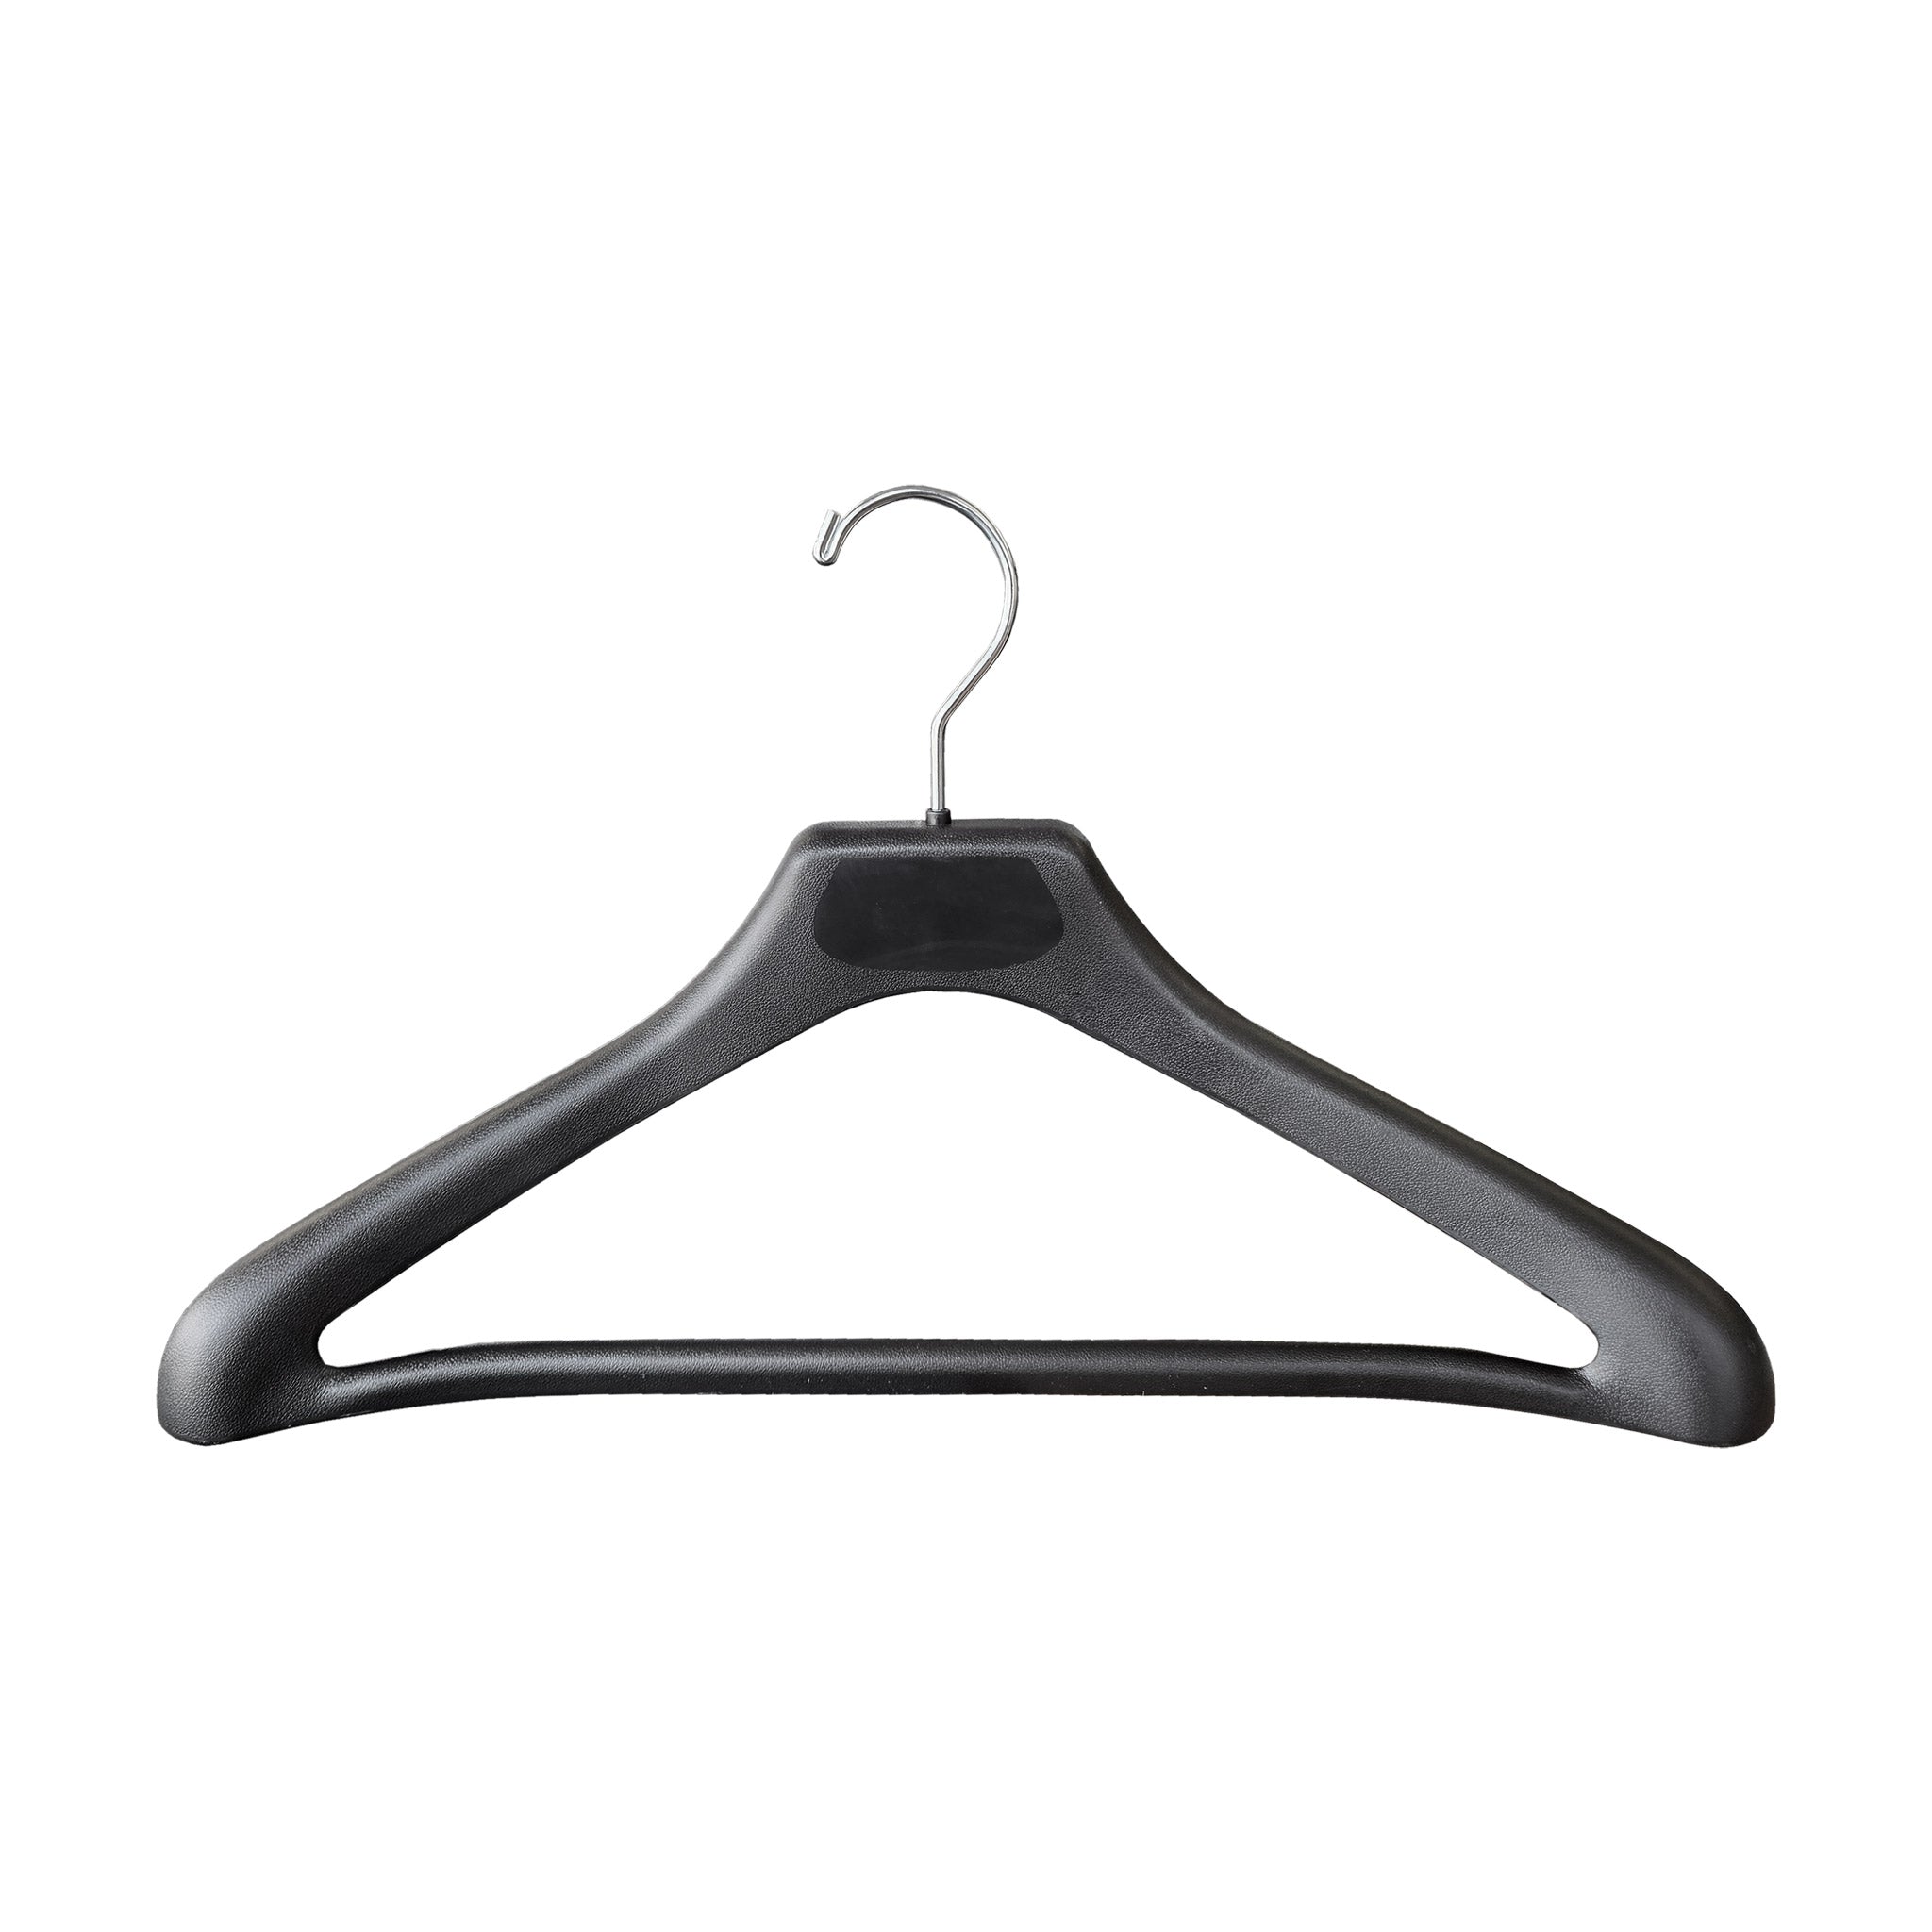 17" Wishbone Suit Hanger | Contoured |50 PK - Eddie's Hang-Up Display Ltd.